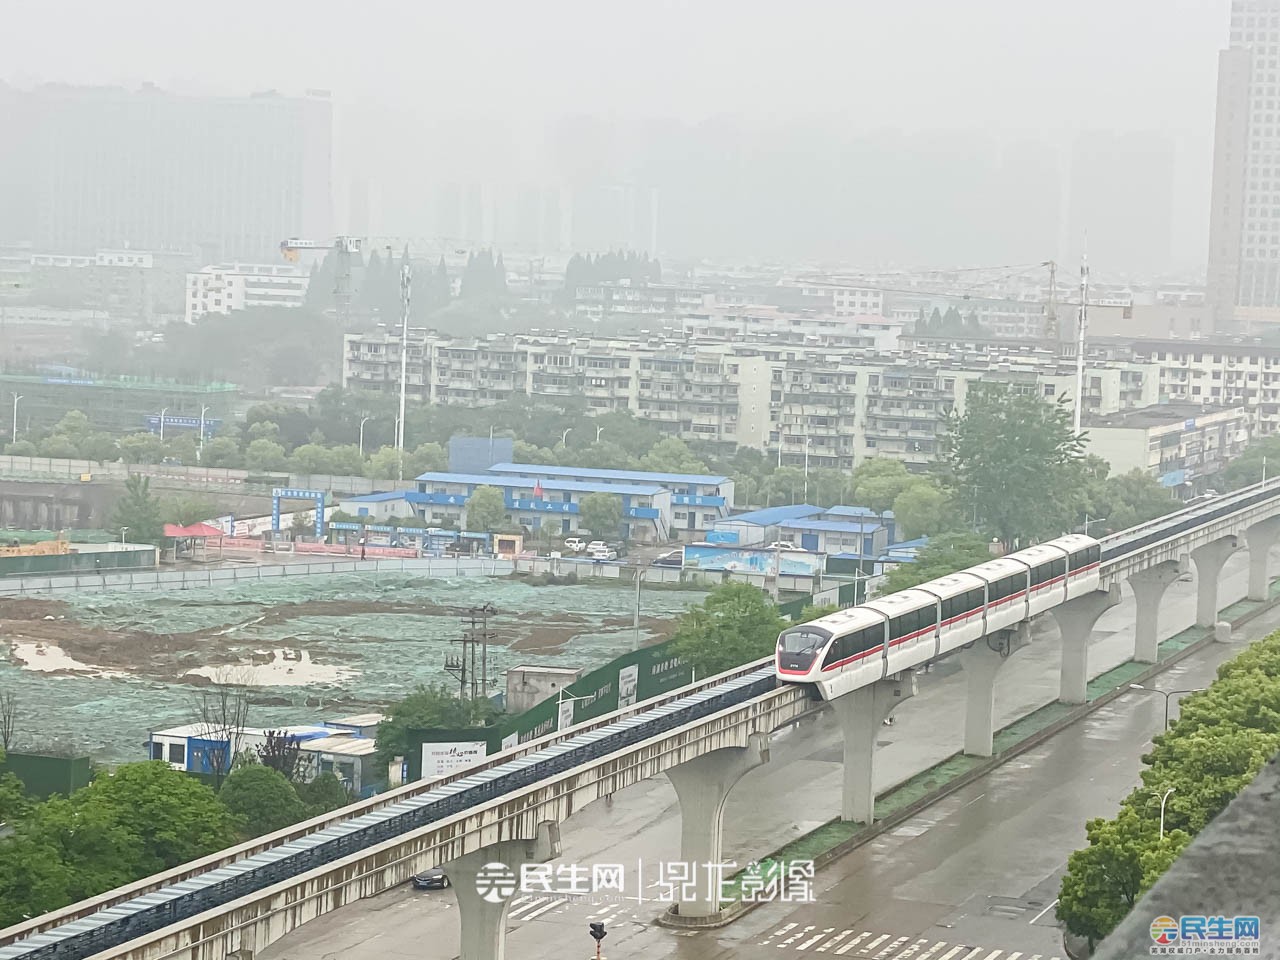 经审核测算,芜湖市轨道交通1号线,2号线一期运营期前三年平均总运营